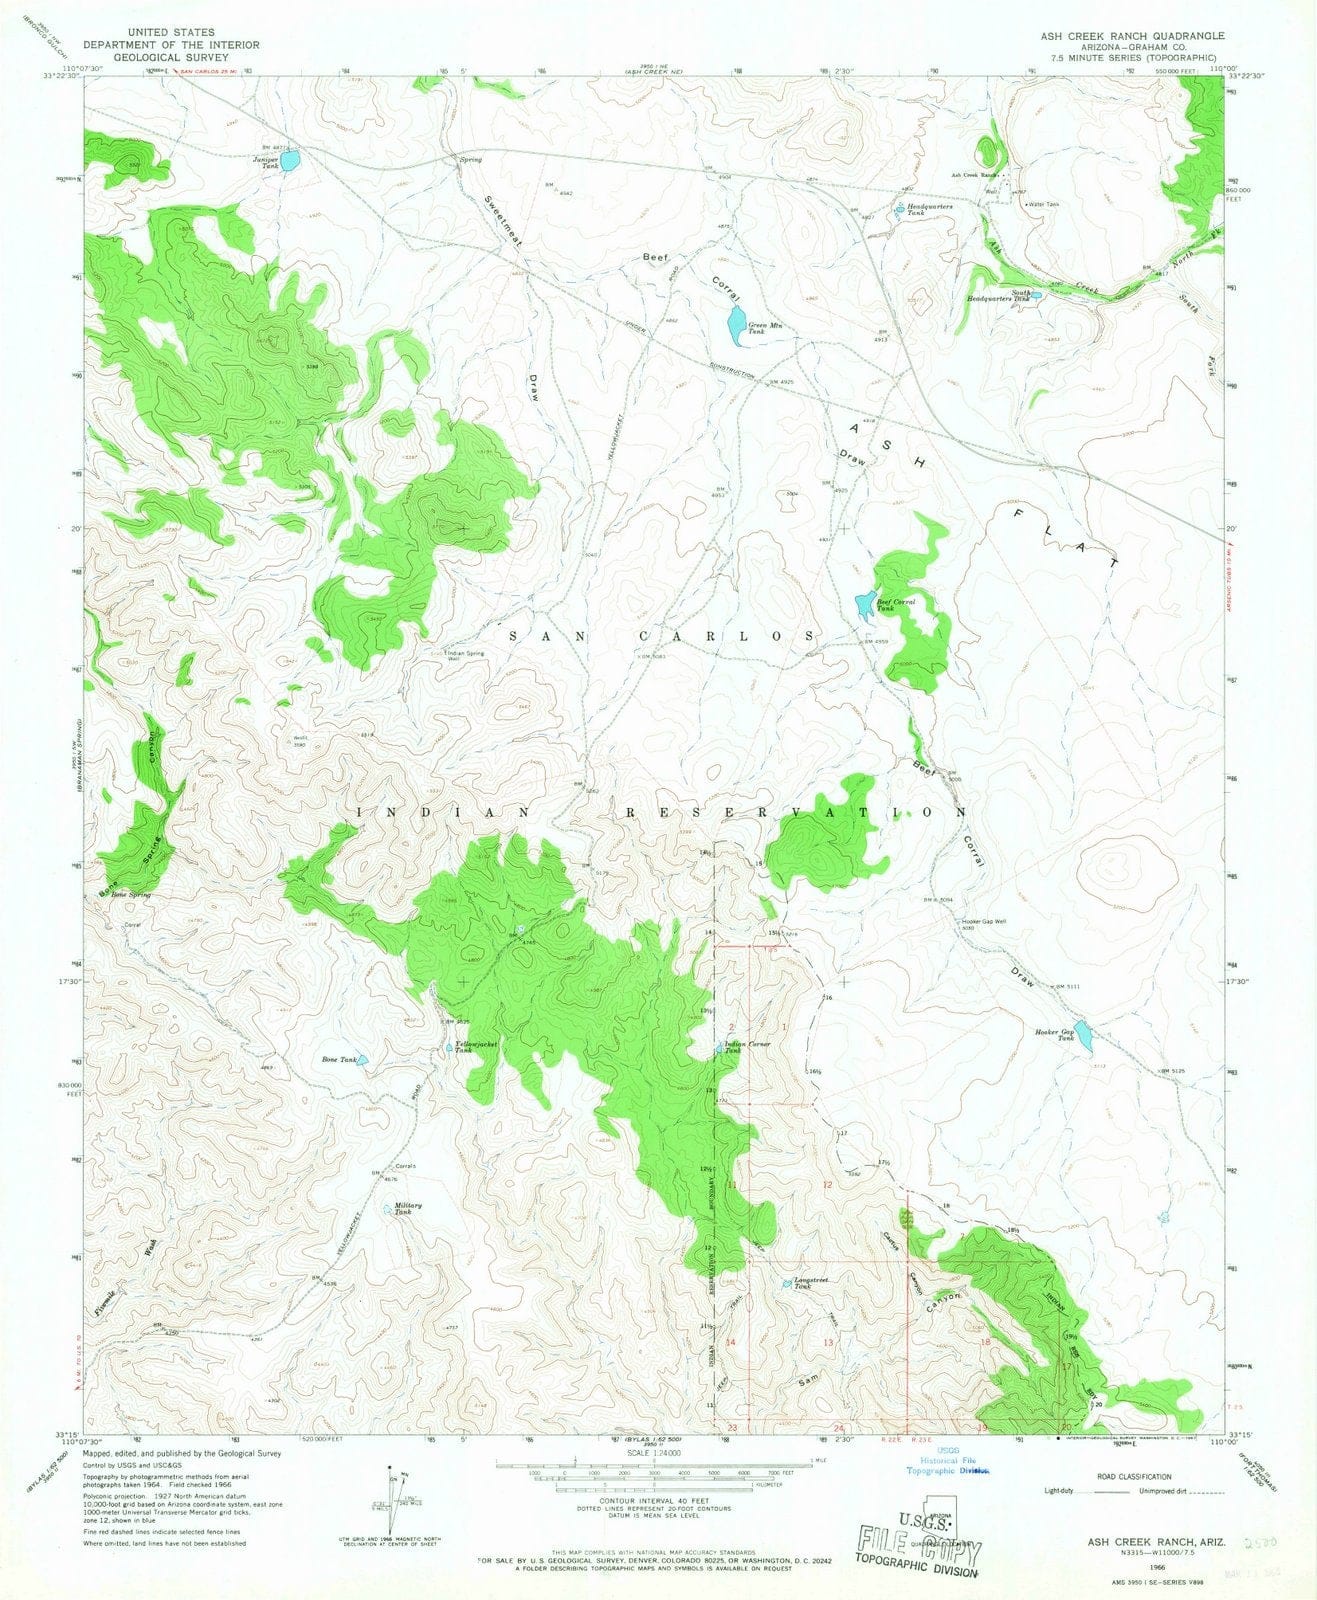 1966 Ash Creek Ranch, AZ - Arizona - USGS Topographic Map